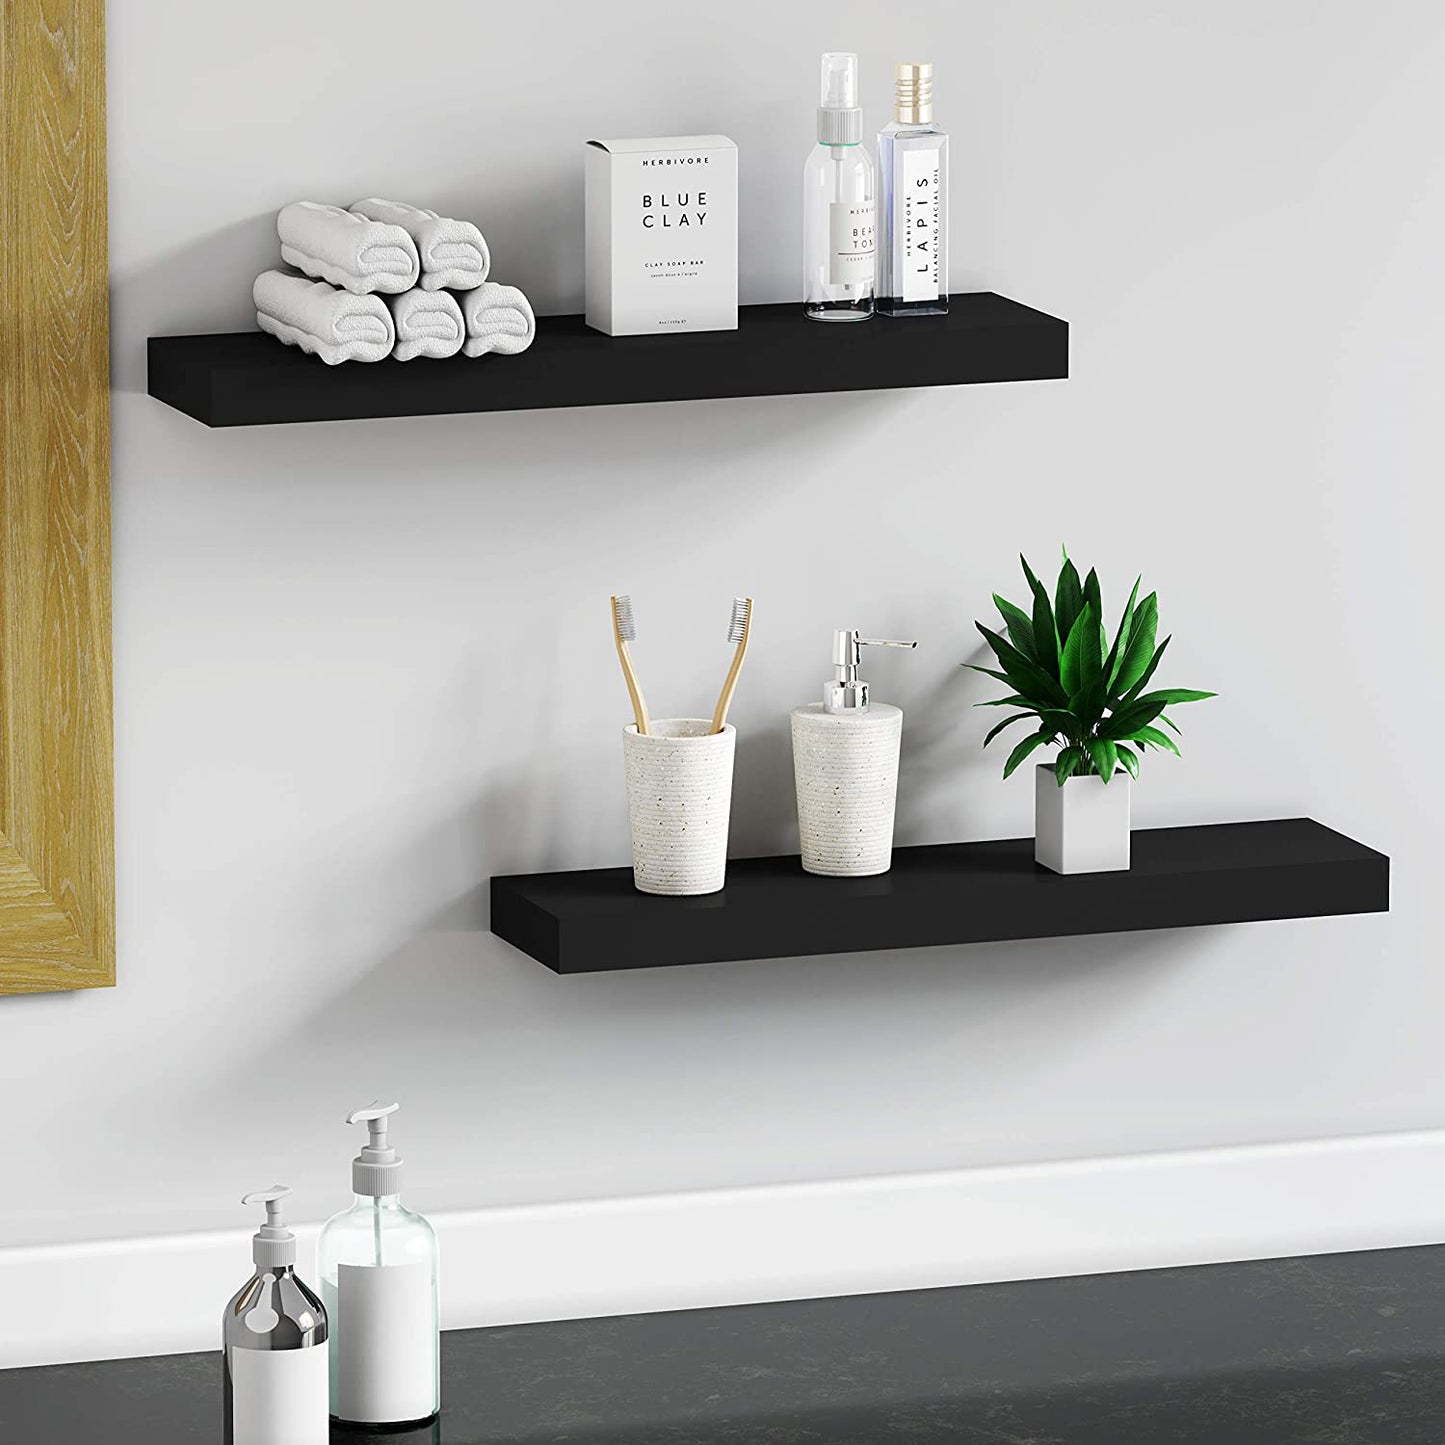 Wall Shelves: Bathroom Kitchen Living ,Kitchen,Room Bedroom Storage,Black